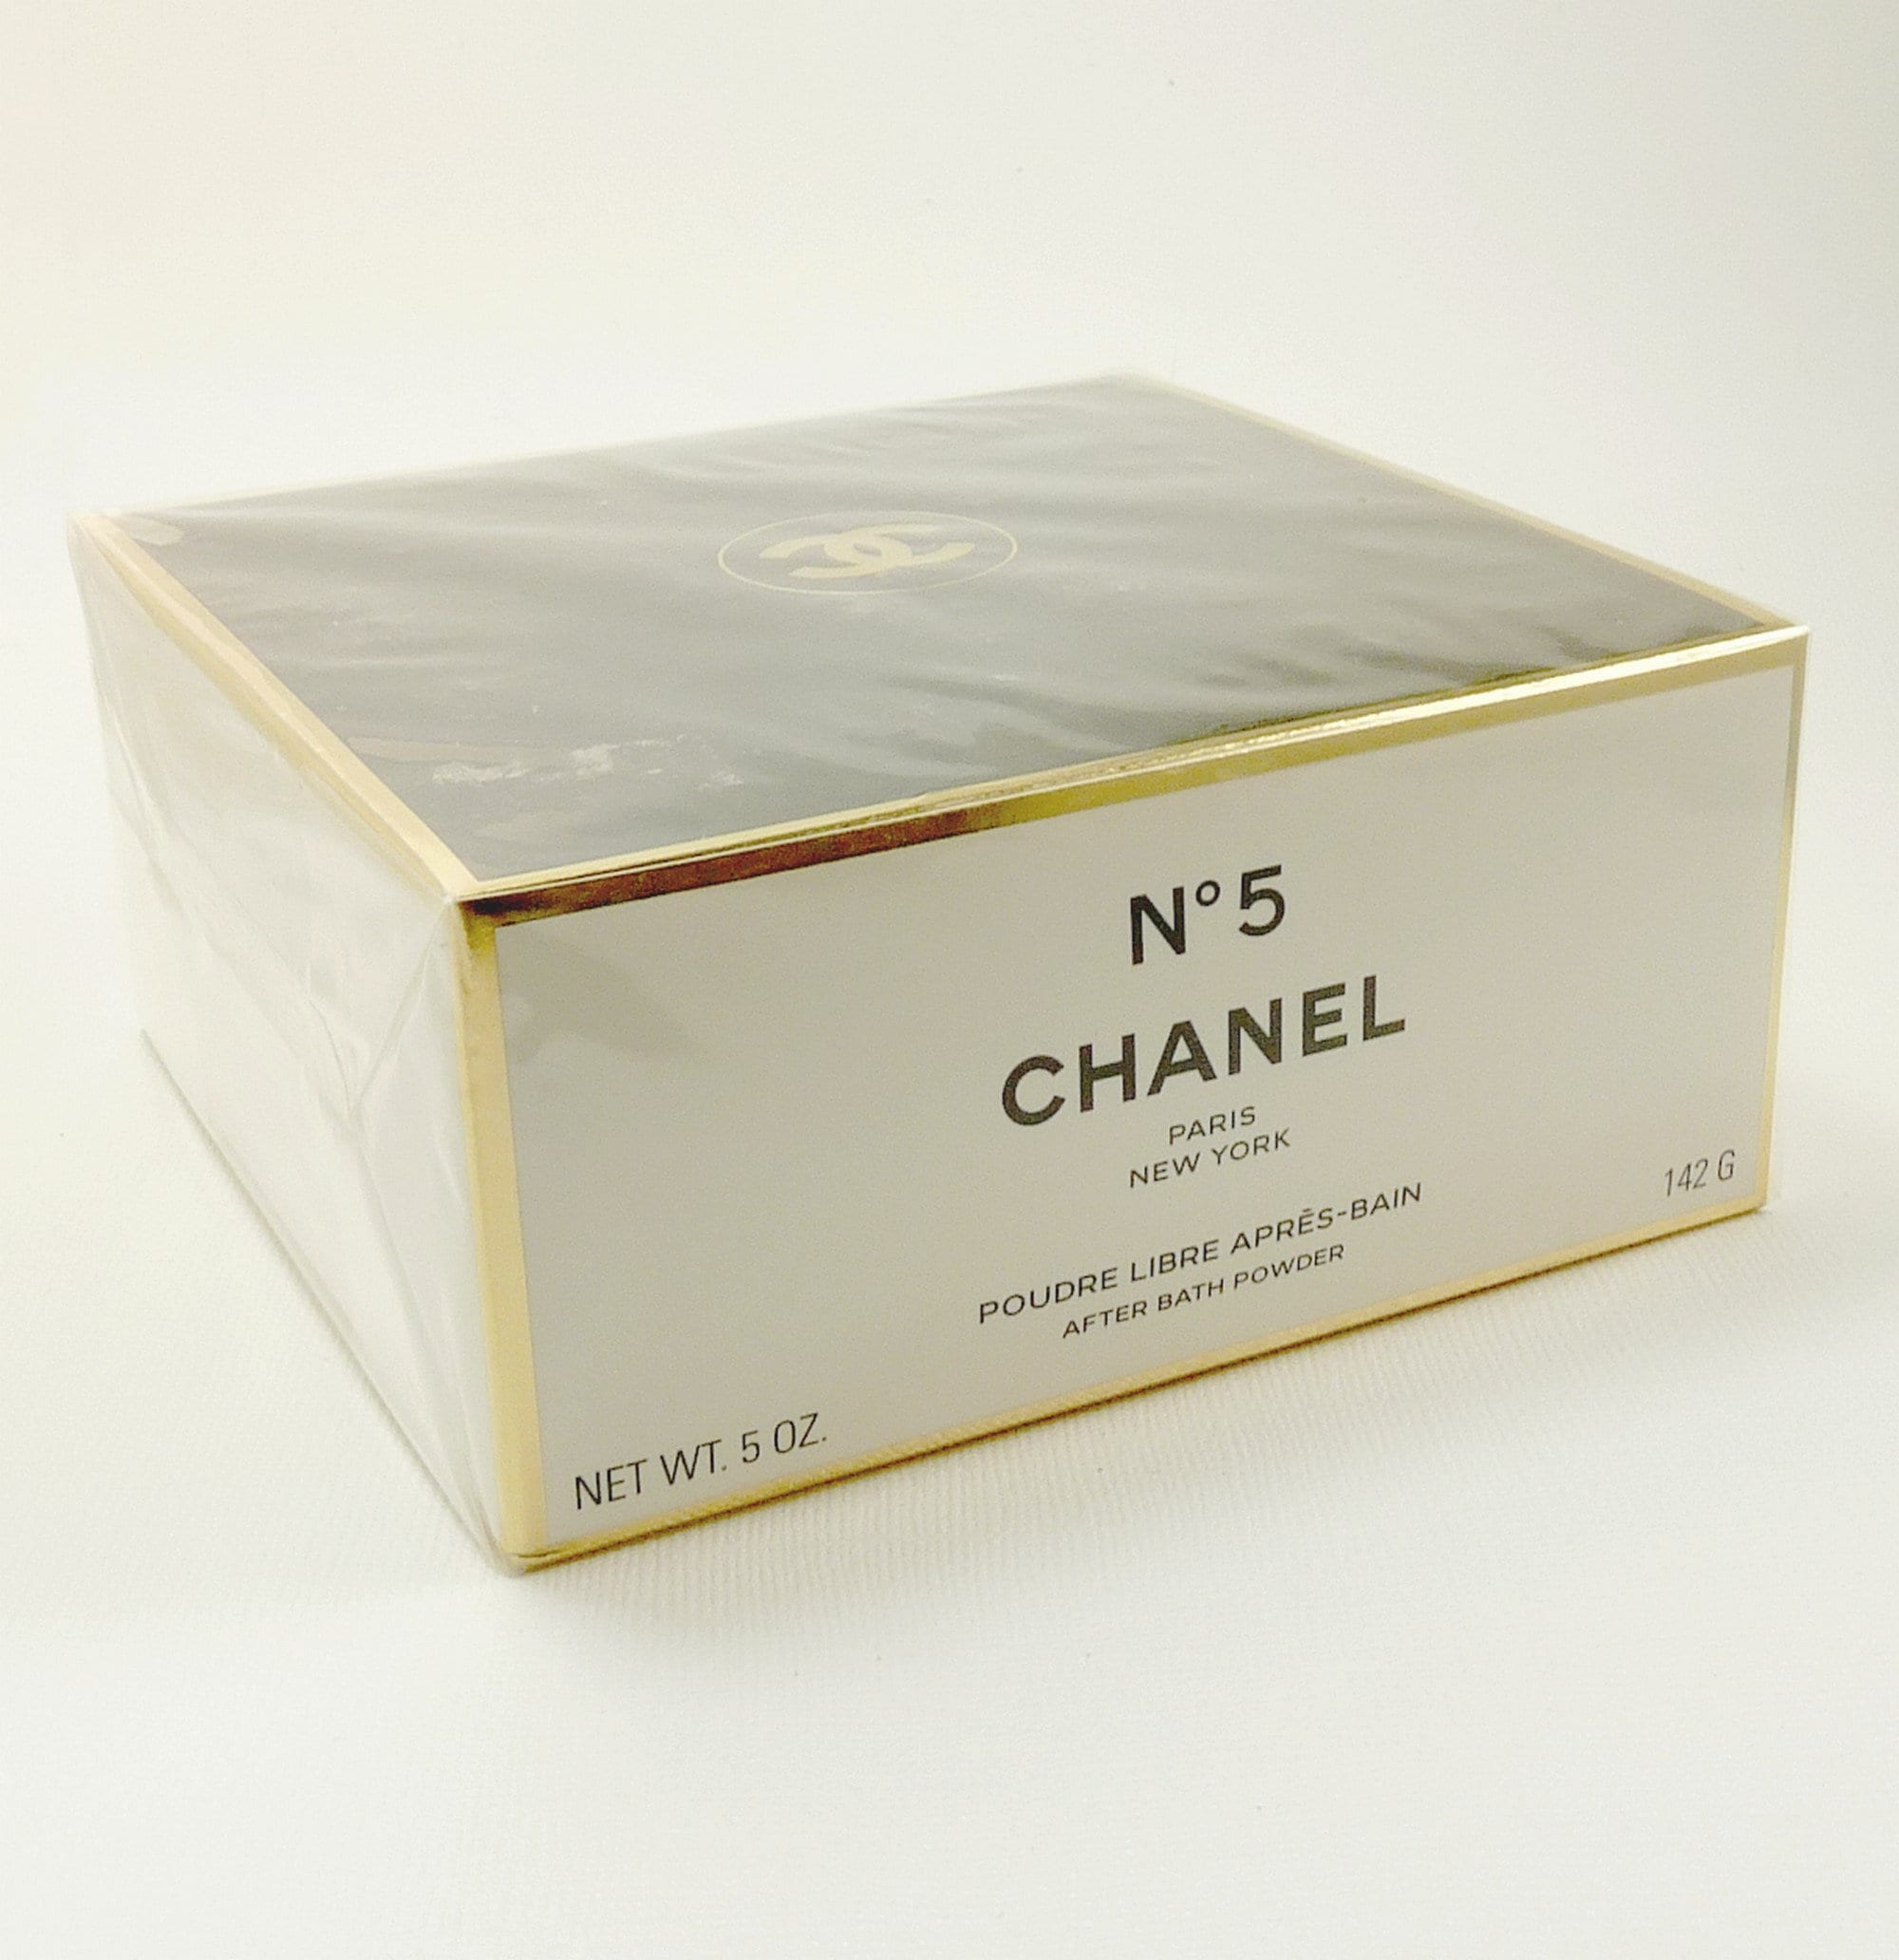 Chanel Bath Powder 